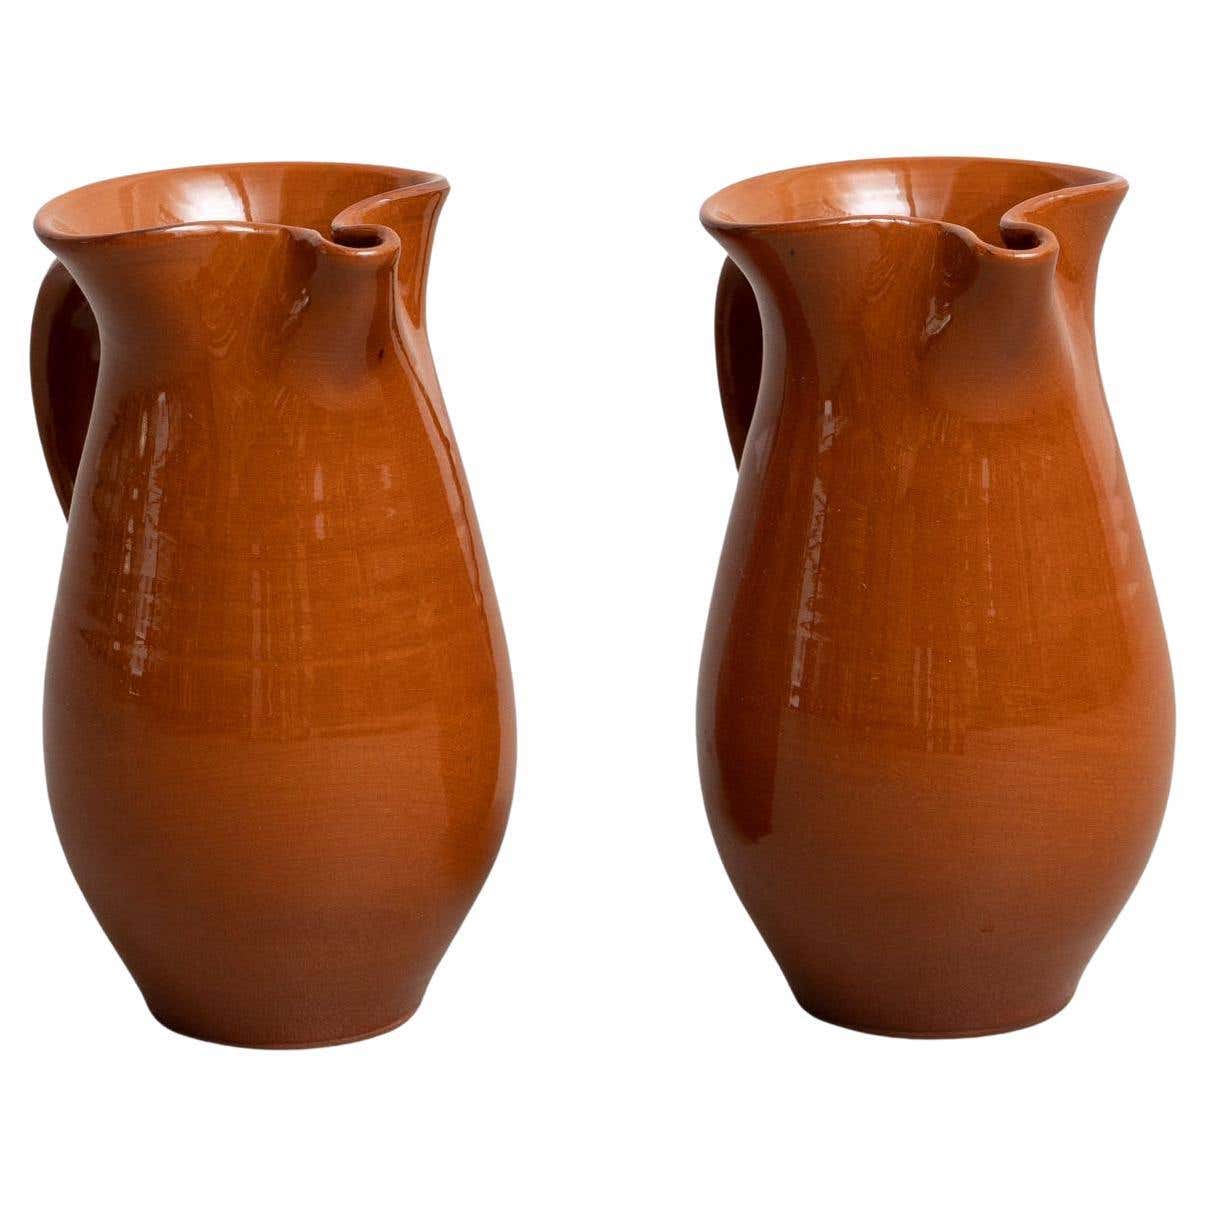 Juego de dos jarrones de cerámica tradicional española de mediados del siglo XX